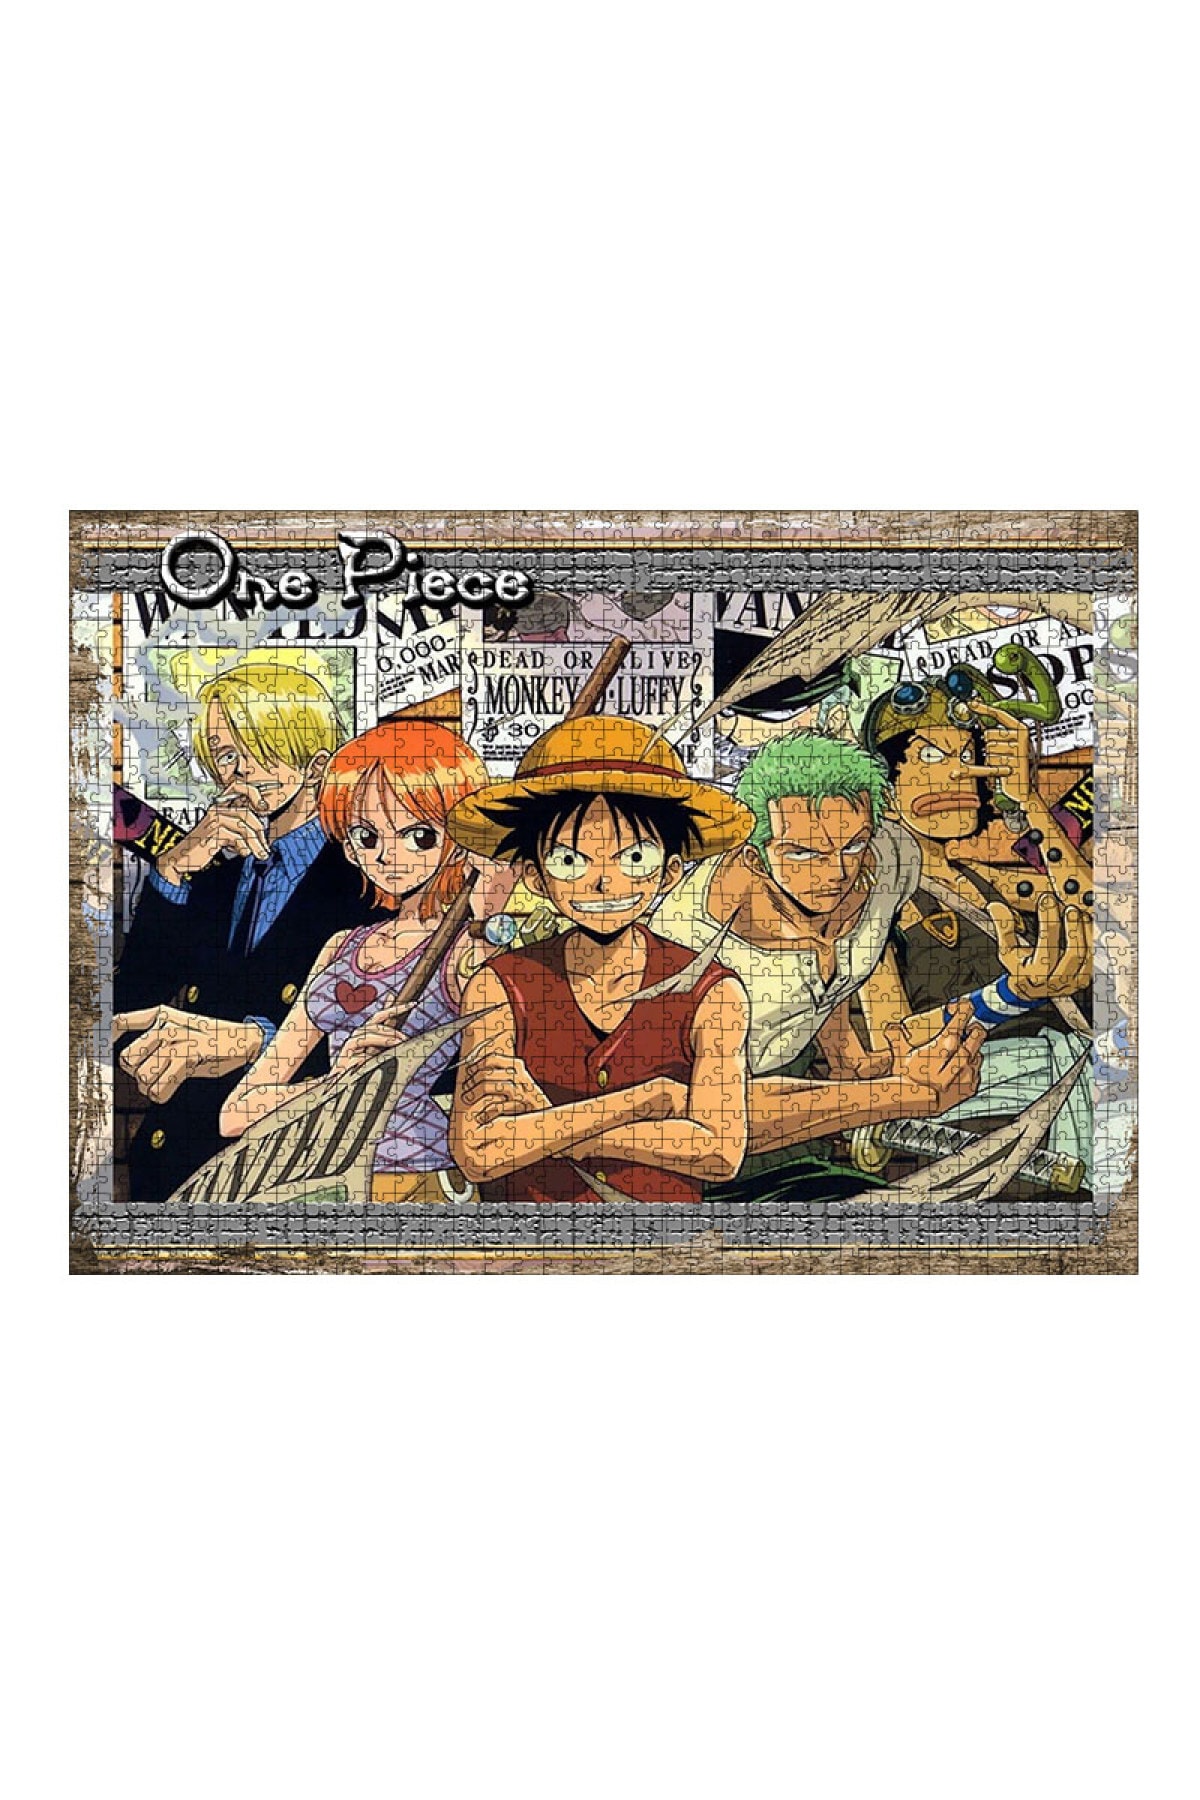 Tablomega Ahşap Mdf Puzzle Yapboz One Piece 1000 Parça 50*70 Cm